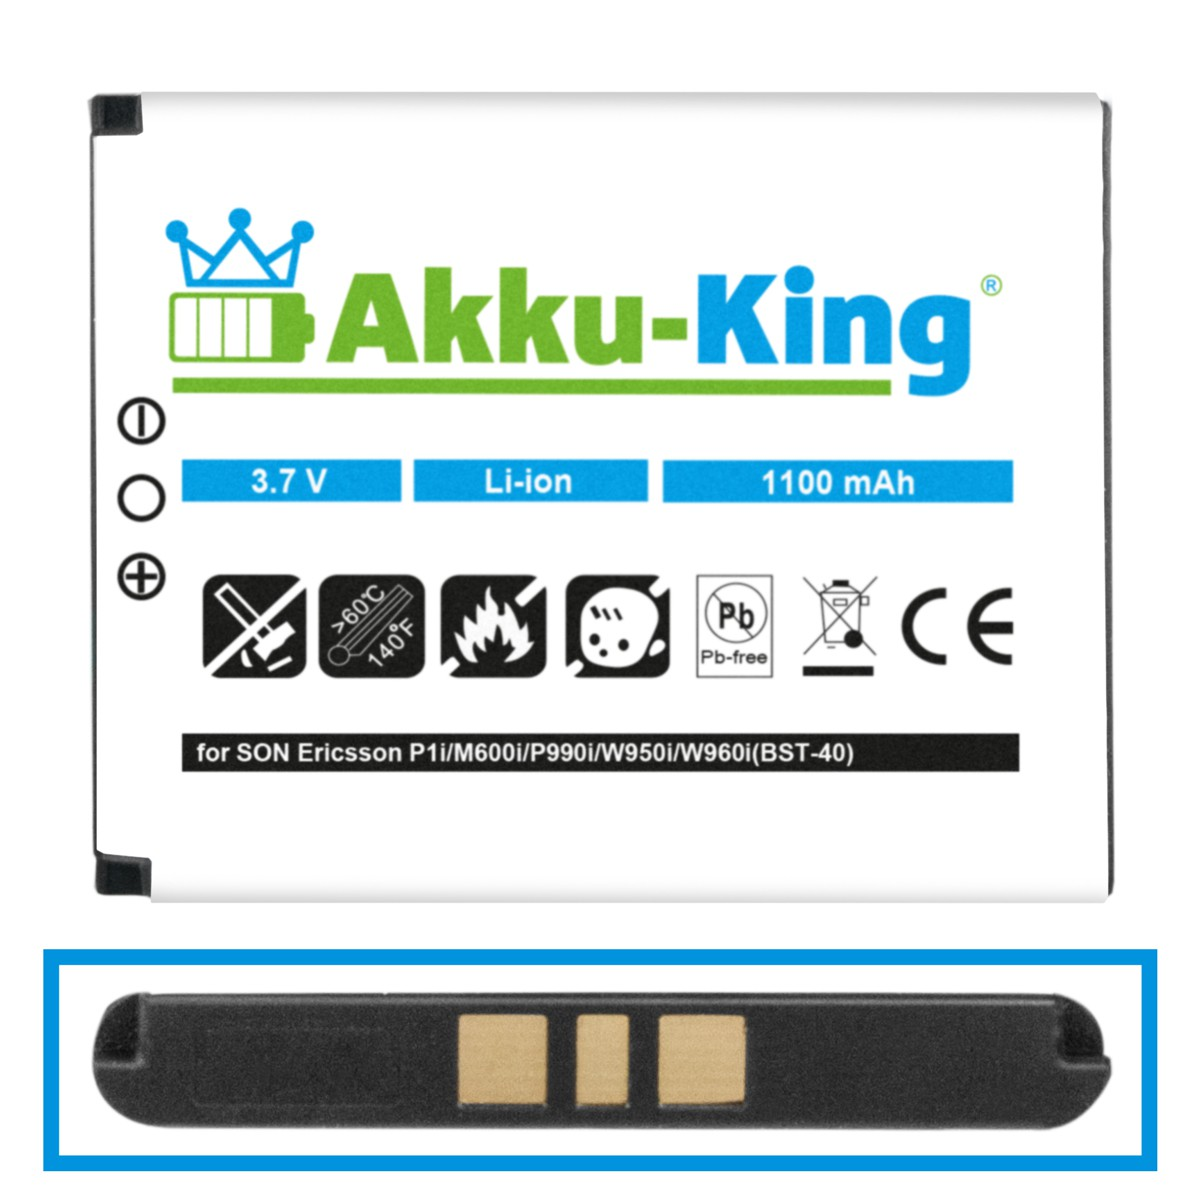 Volt, mit Akku Sony-Ericsson Handy-Akku, AKKU-KING 3.7 kompatibel Li-Ion BST-40 1100mAh